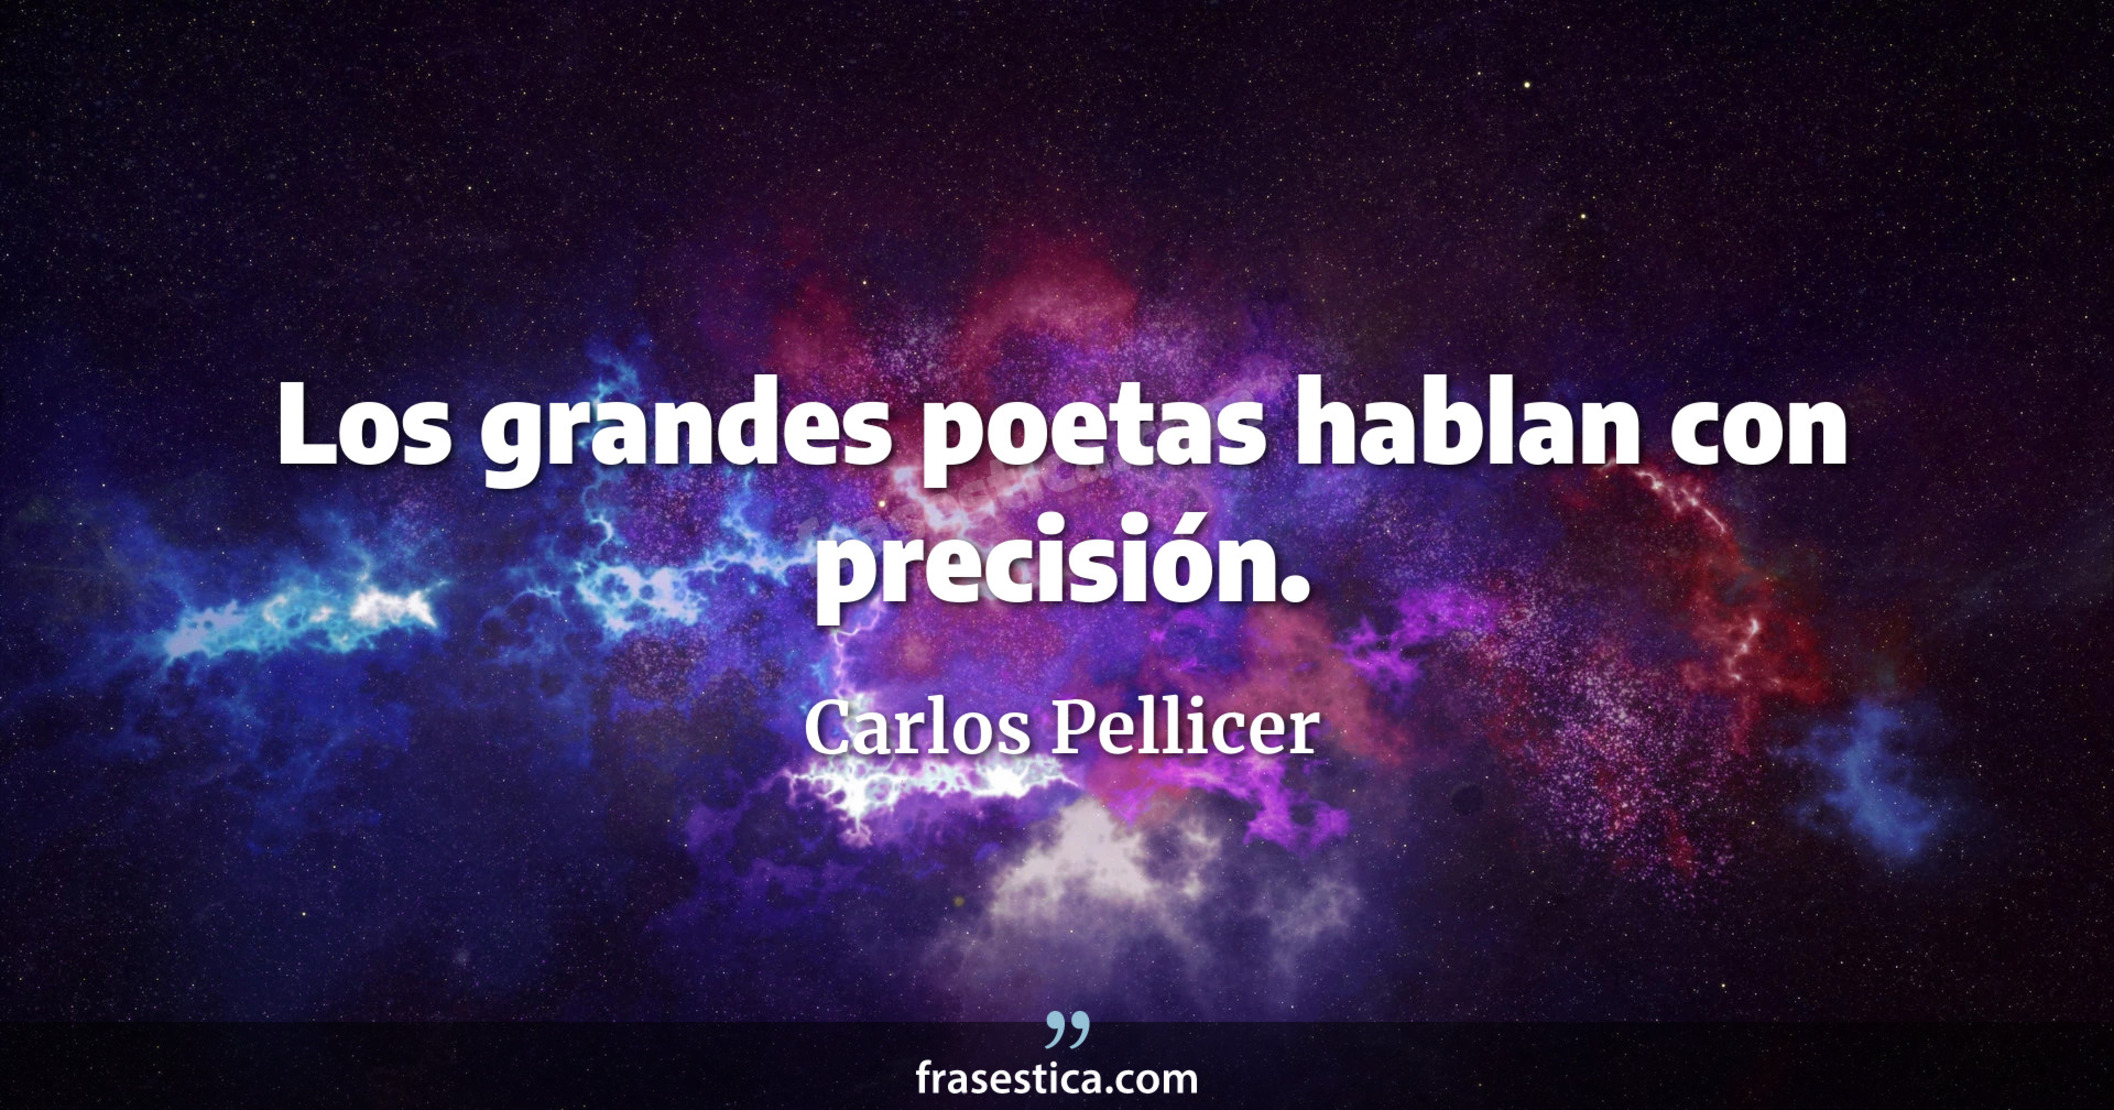 Los grandes poetas hablan con precisión. - Carlos Pellicer